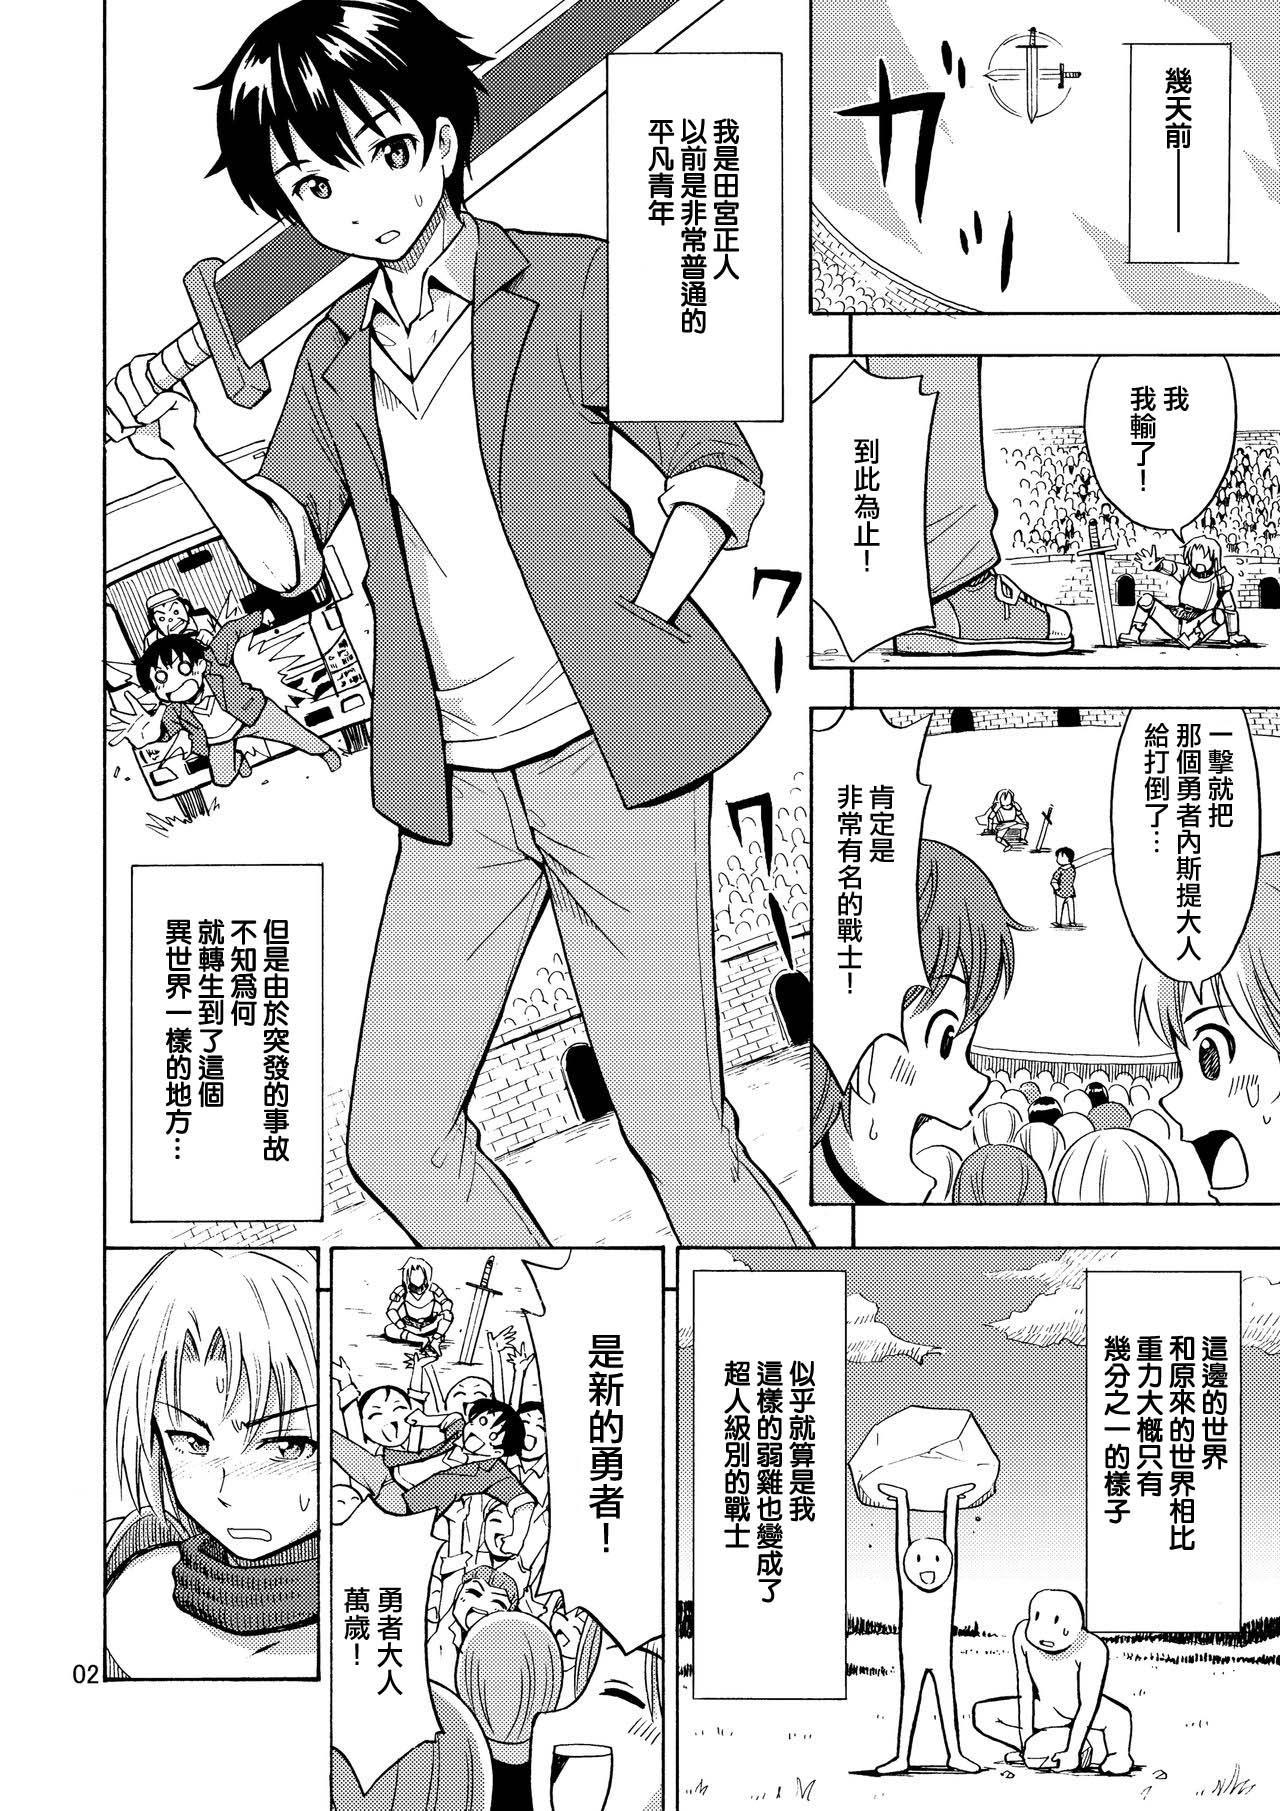 Stretching Yuusha wa Onnanoko ni Naru Noroi o Kakerareta! - Original Top - Page 5